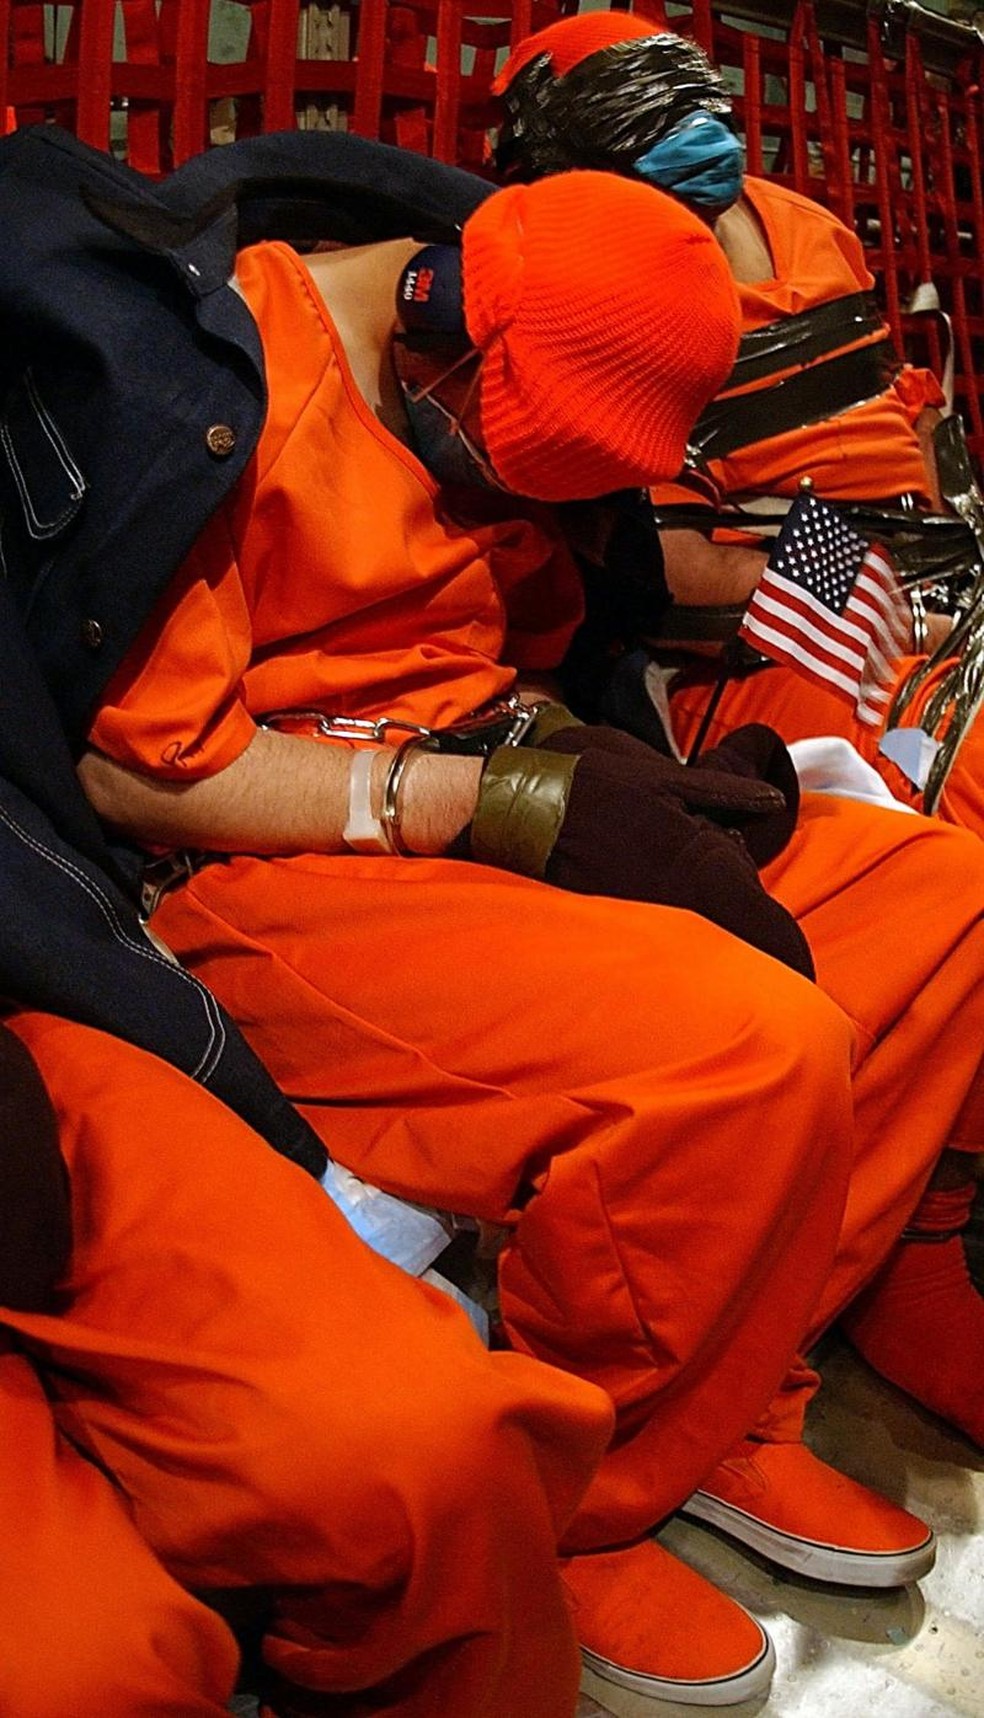 Detidos suspeitos de pertencer à Al Qaeda ou ao Talibã a bordo de um avião C-141 Starlifter das forças aéreas dos EUA. Este foi o primeiro voo a enviar prisioneiros de Kandahar, no Afeganistão, para a base naval de Guantánamo. Uma bandeira americana foi colocada nas mãos de um dos detidos, além de uma jaqueta sobre os ombros dele, possivelmente para protegê-lo do frio durante o voo. — Foto: JEREMY T. LOCK/USAF via BBC